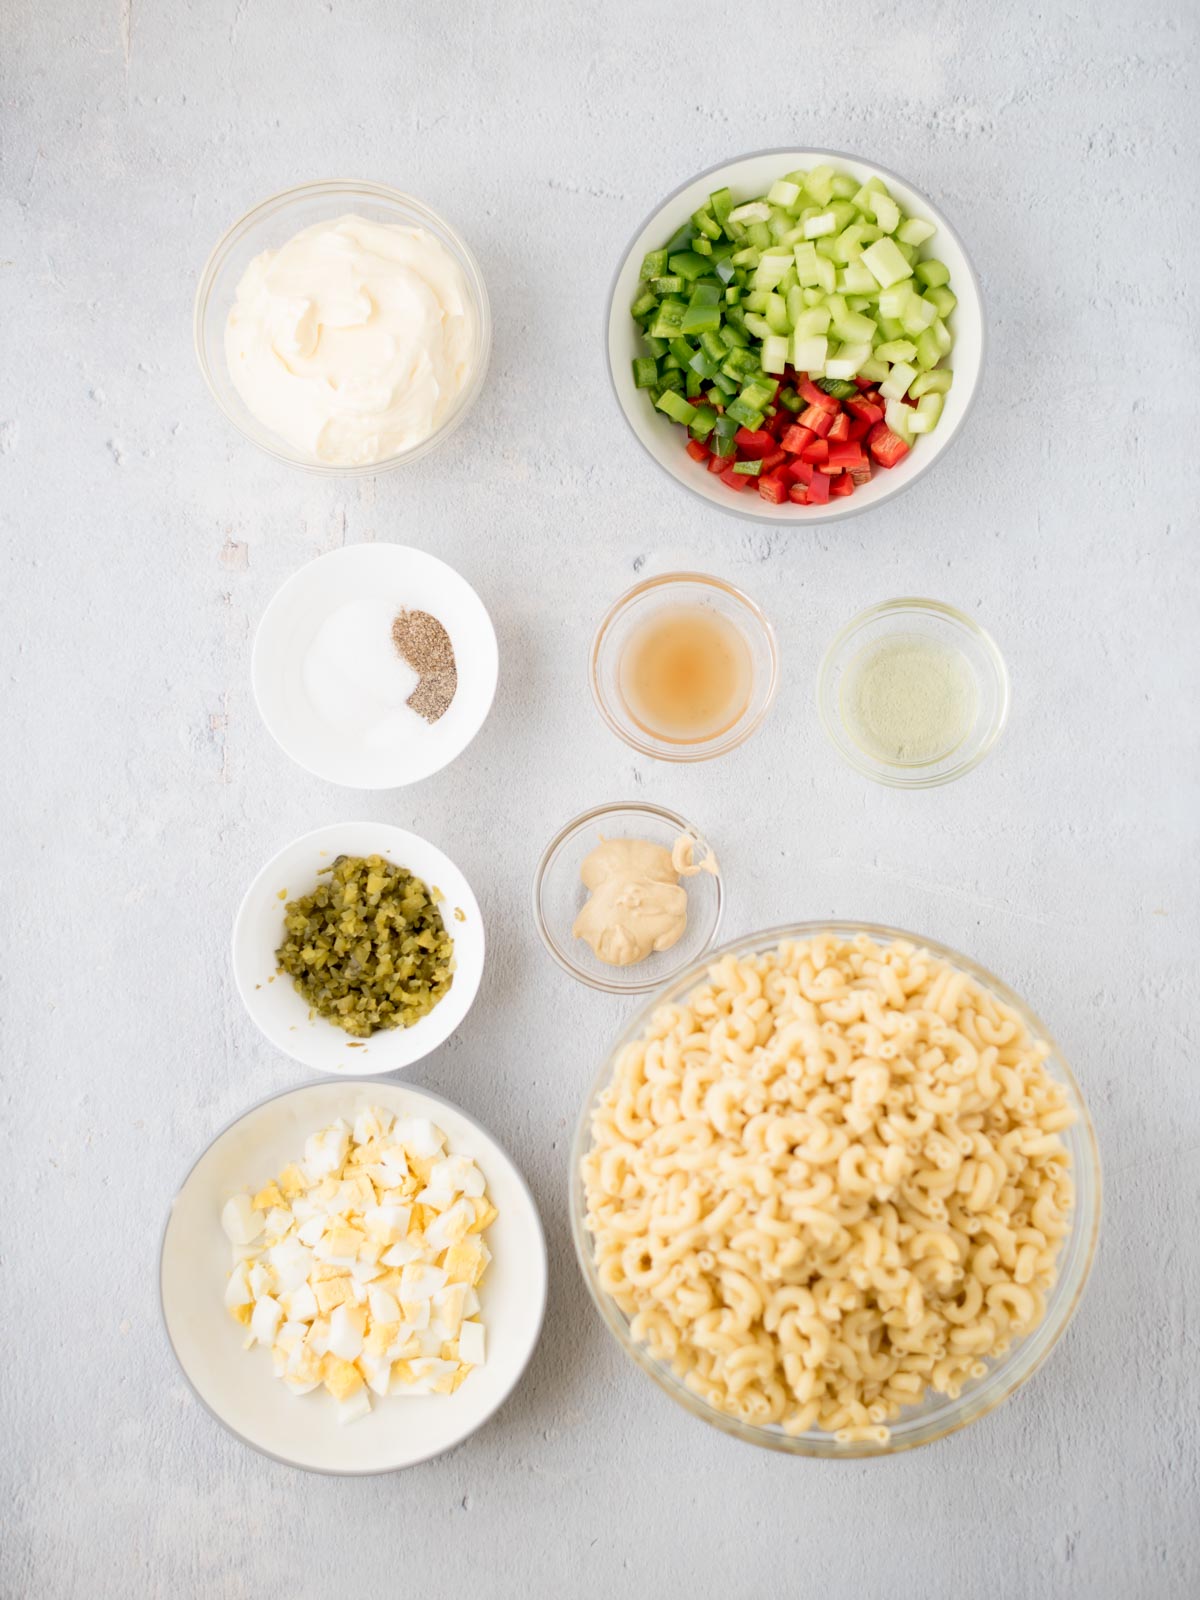 Ingredients for macaroni salad.